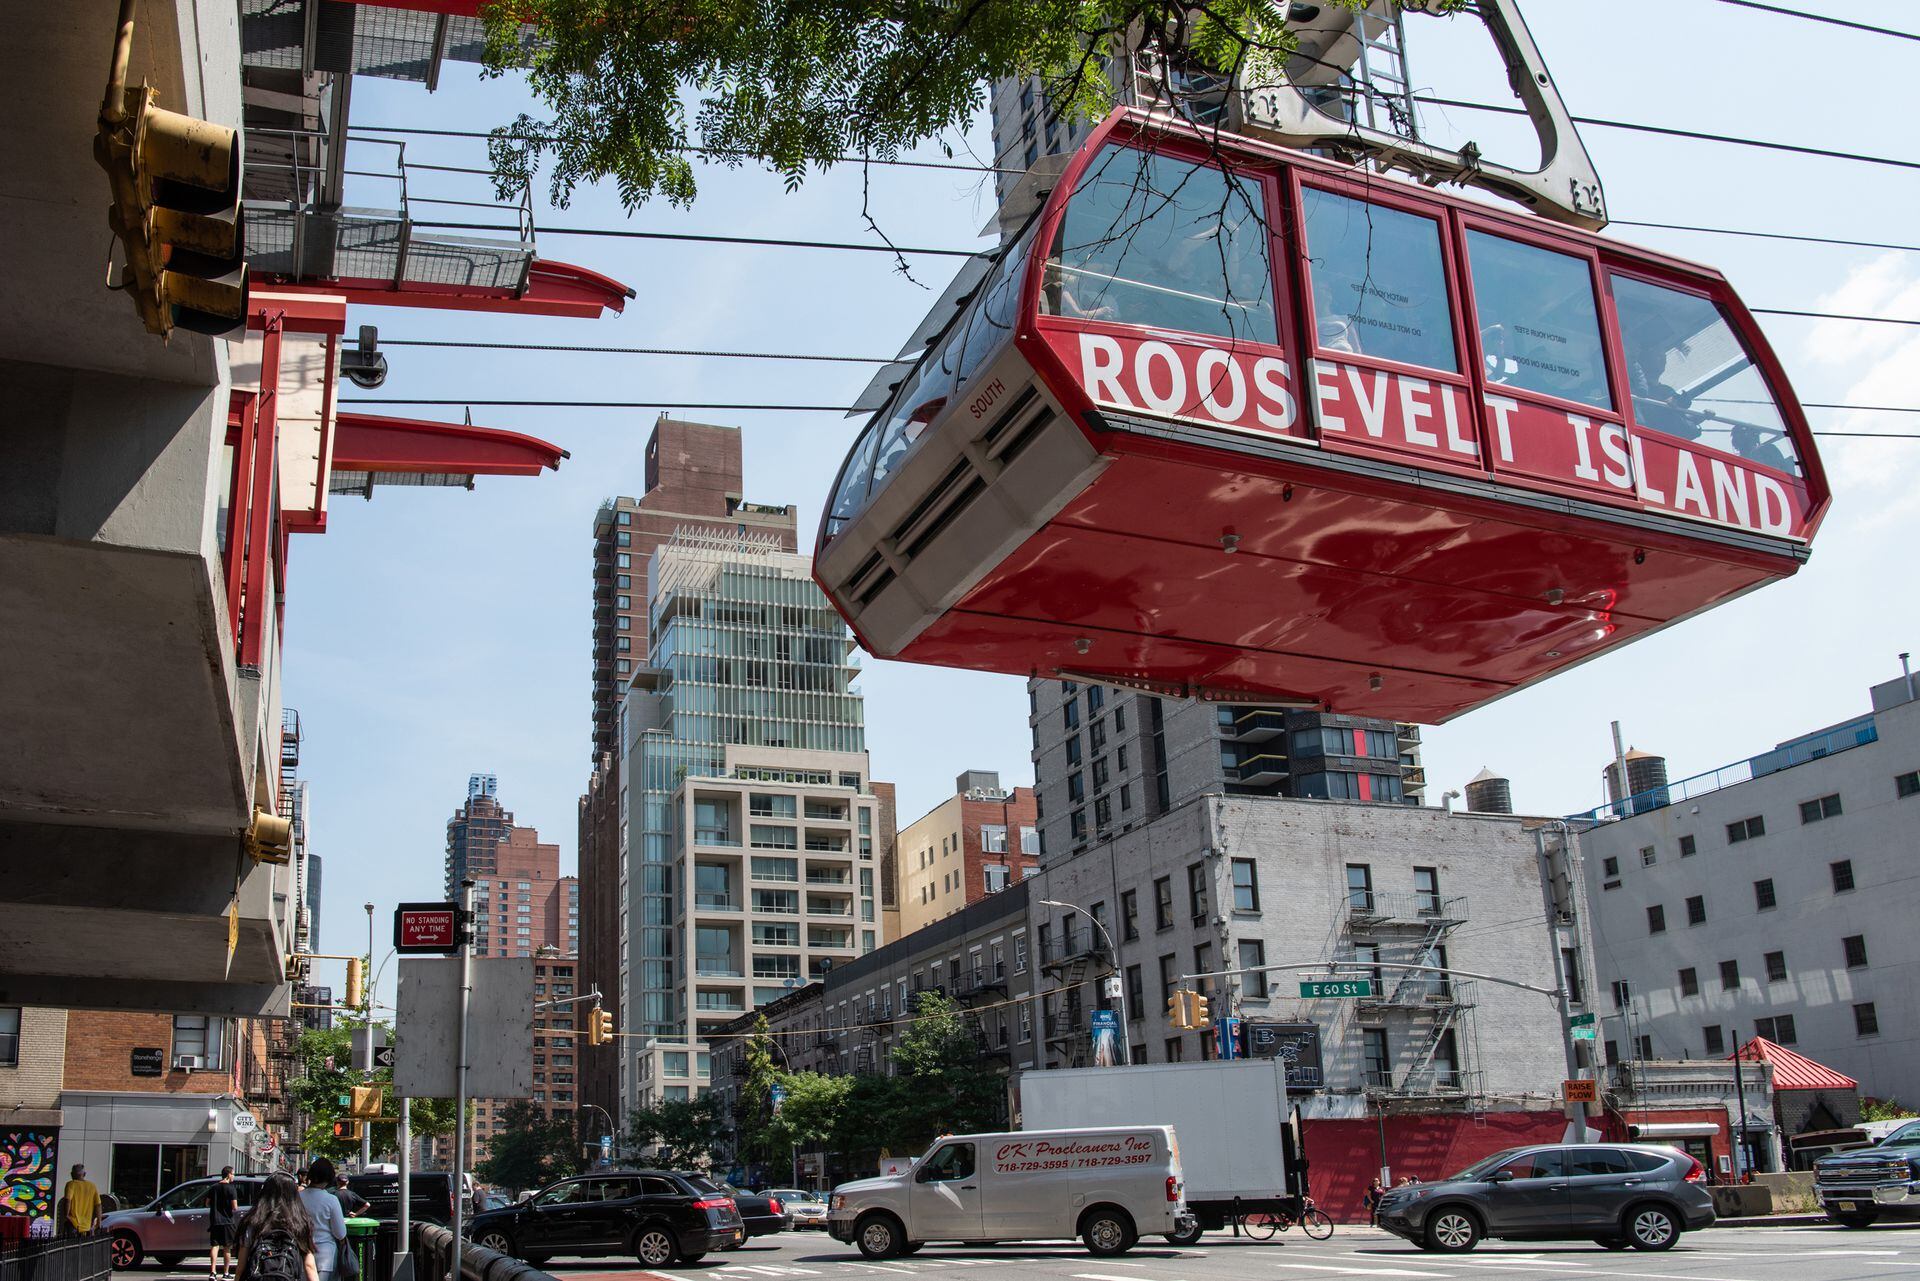 Roosevelt Island Tram, Upper East Side, Roosevelt Island, NYC